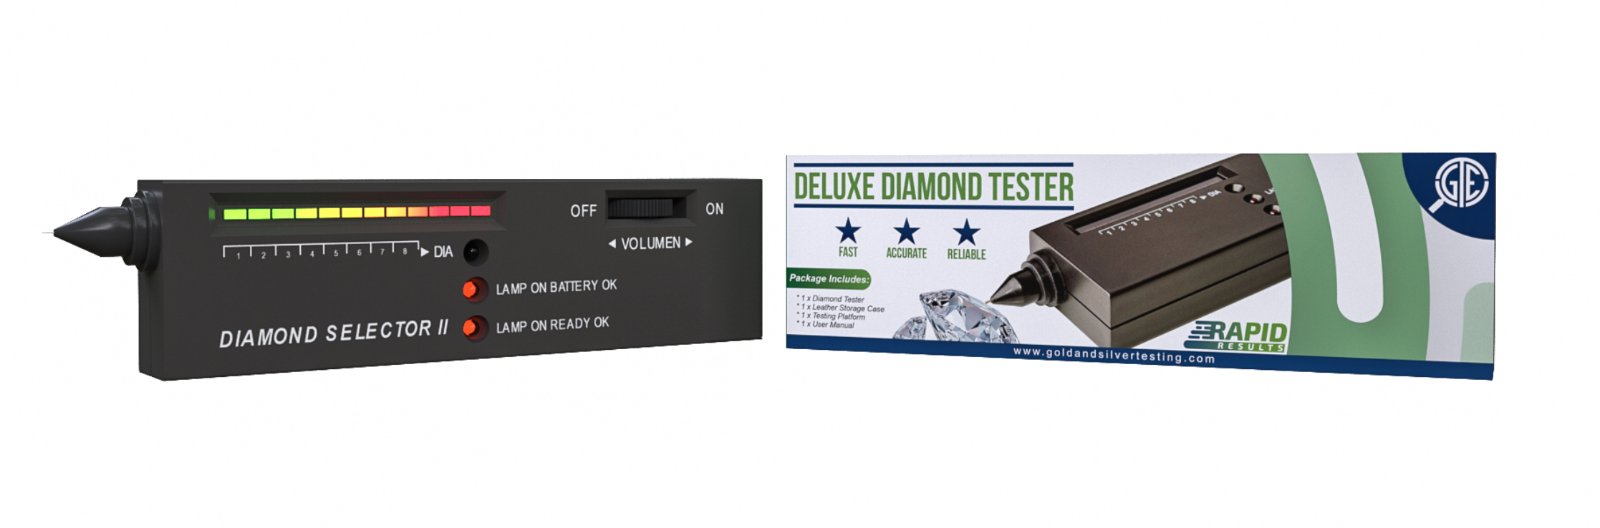 Diamond Tester Professional Diamond Tester Diamond Rwanda